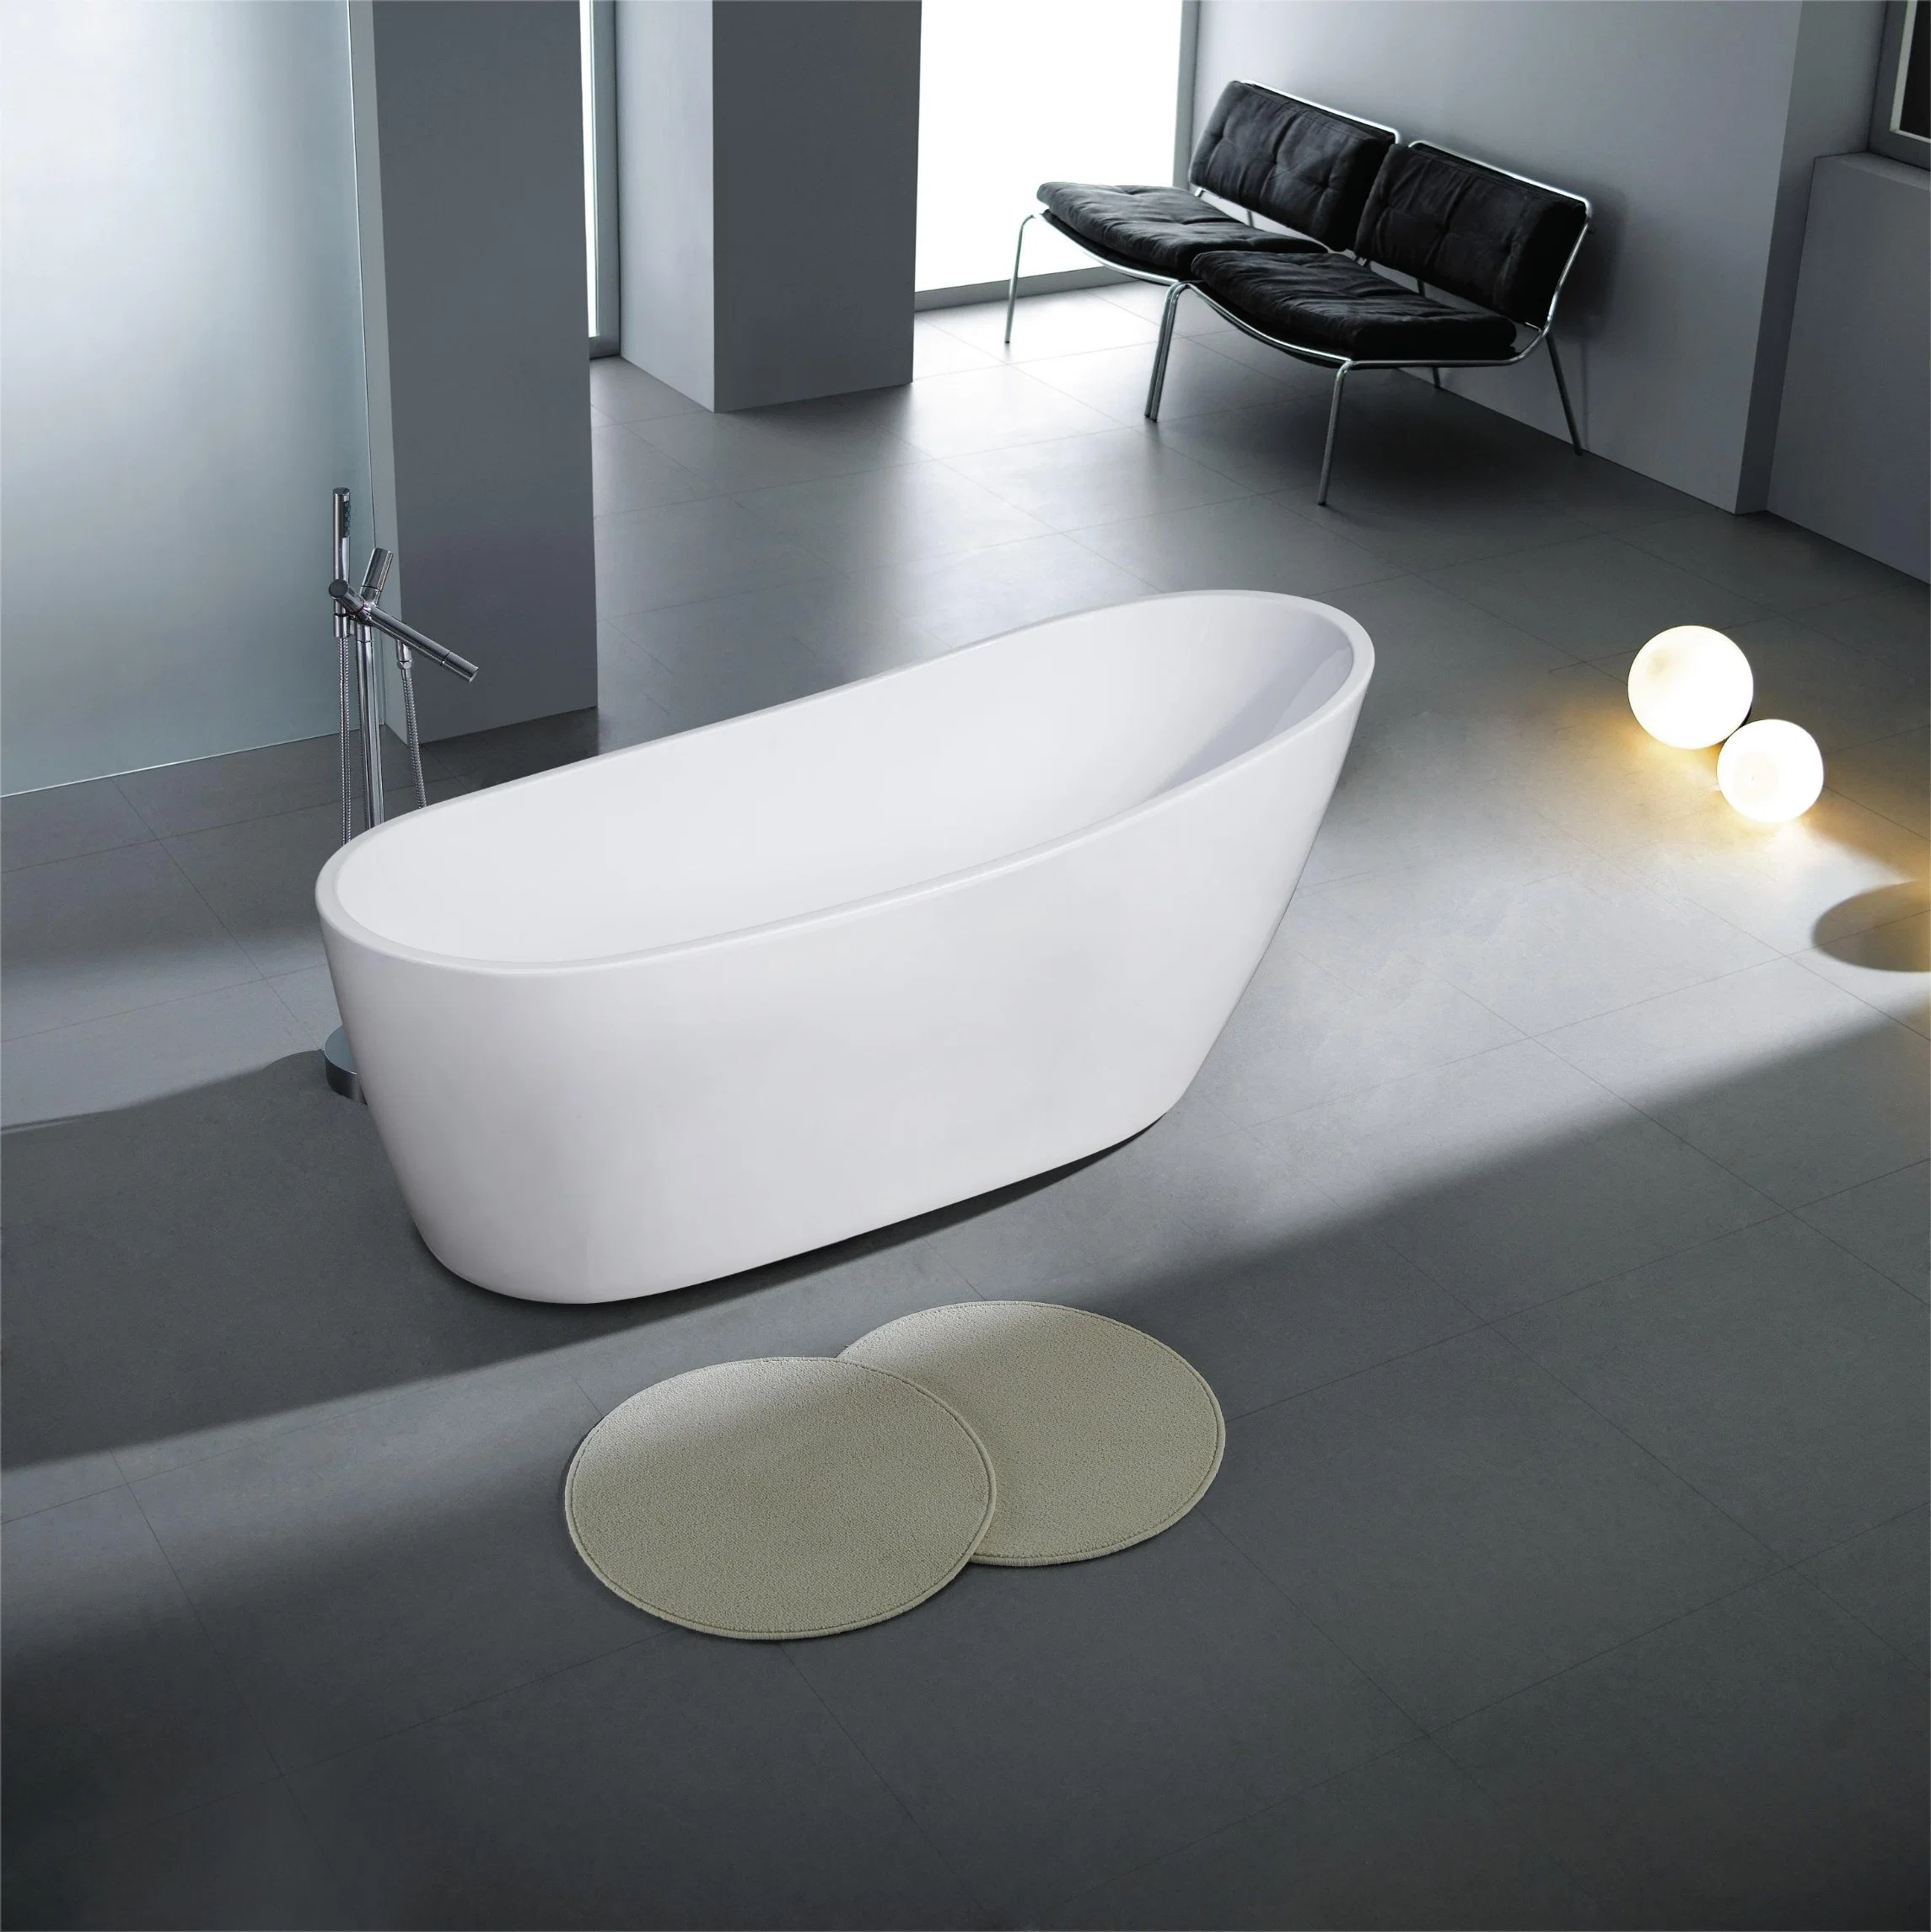 Gran Venta: Top-Notch CE/Ucpc aprobado remojo bañera independiente Single-Slipper elegante bañera con embalaje apilables disponibles